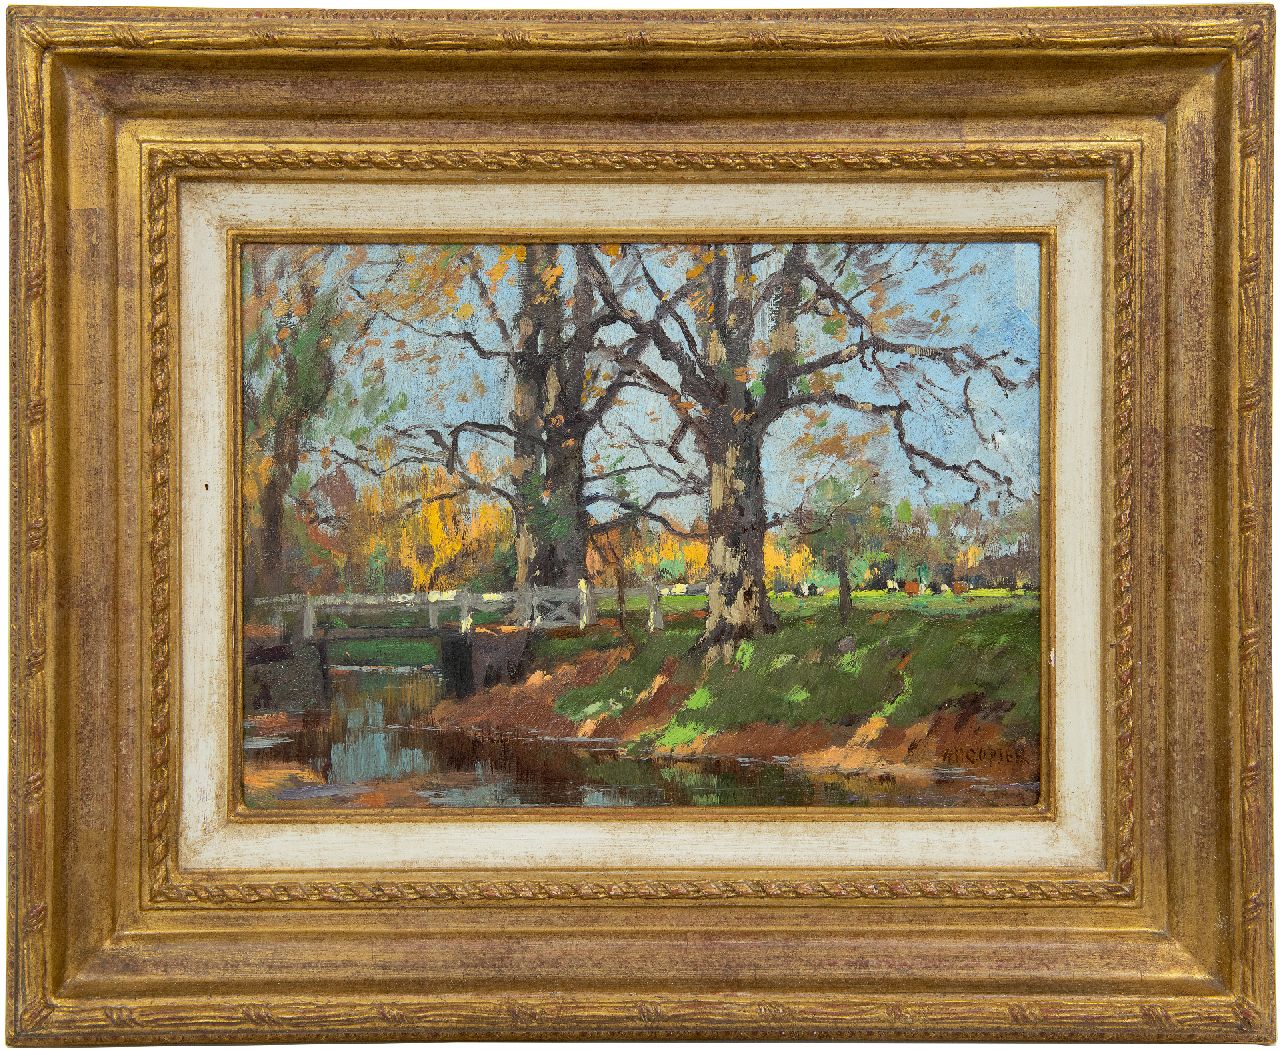 Gorter A.M.  | 'Arnold' Marc Gorter | Schilderijen te koop aangeboden | Slootkant (beek op Het Loo), olieverf op paneel 26,0 x 36,6 cm, gesigneerd rechtsonder en te dateren ca. 1920